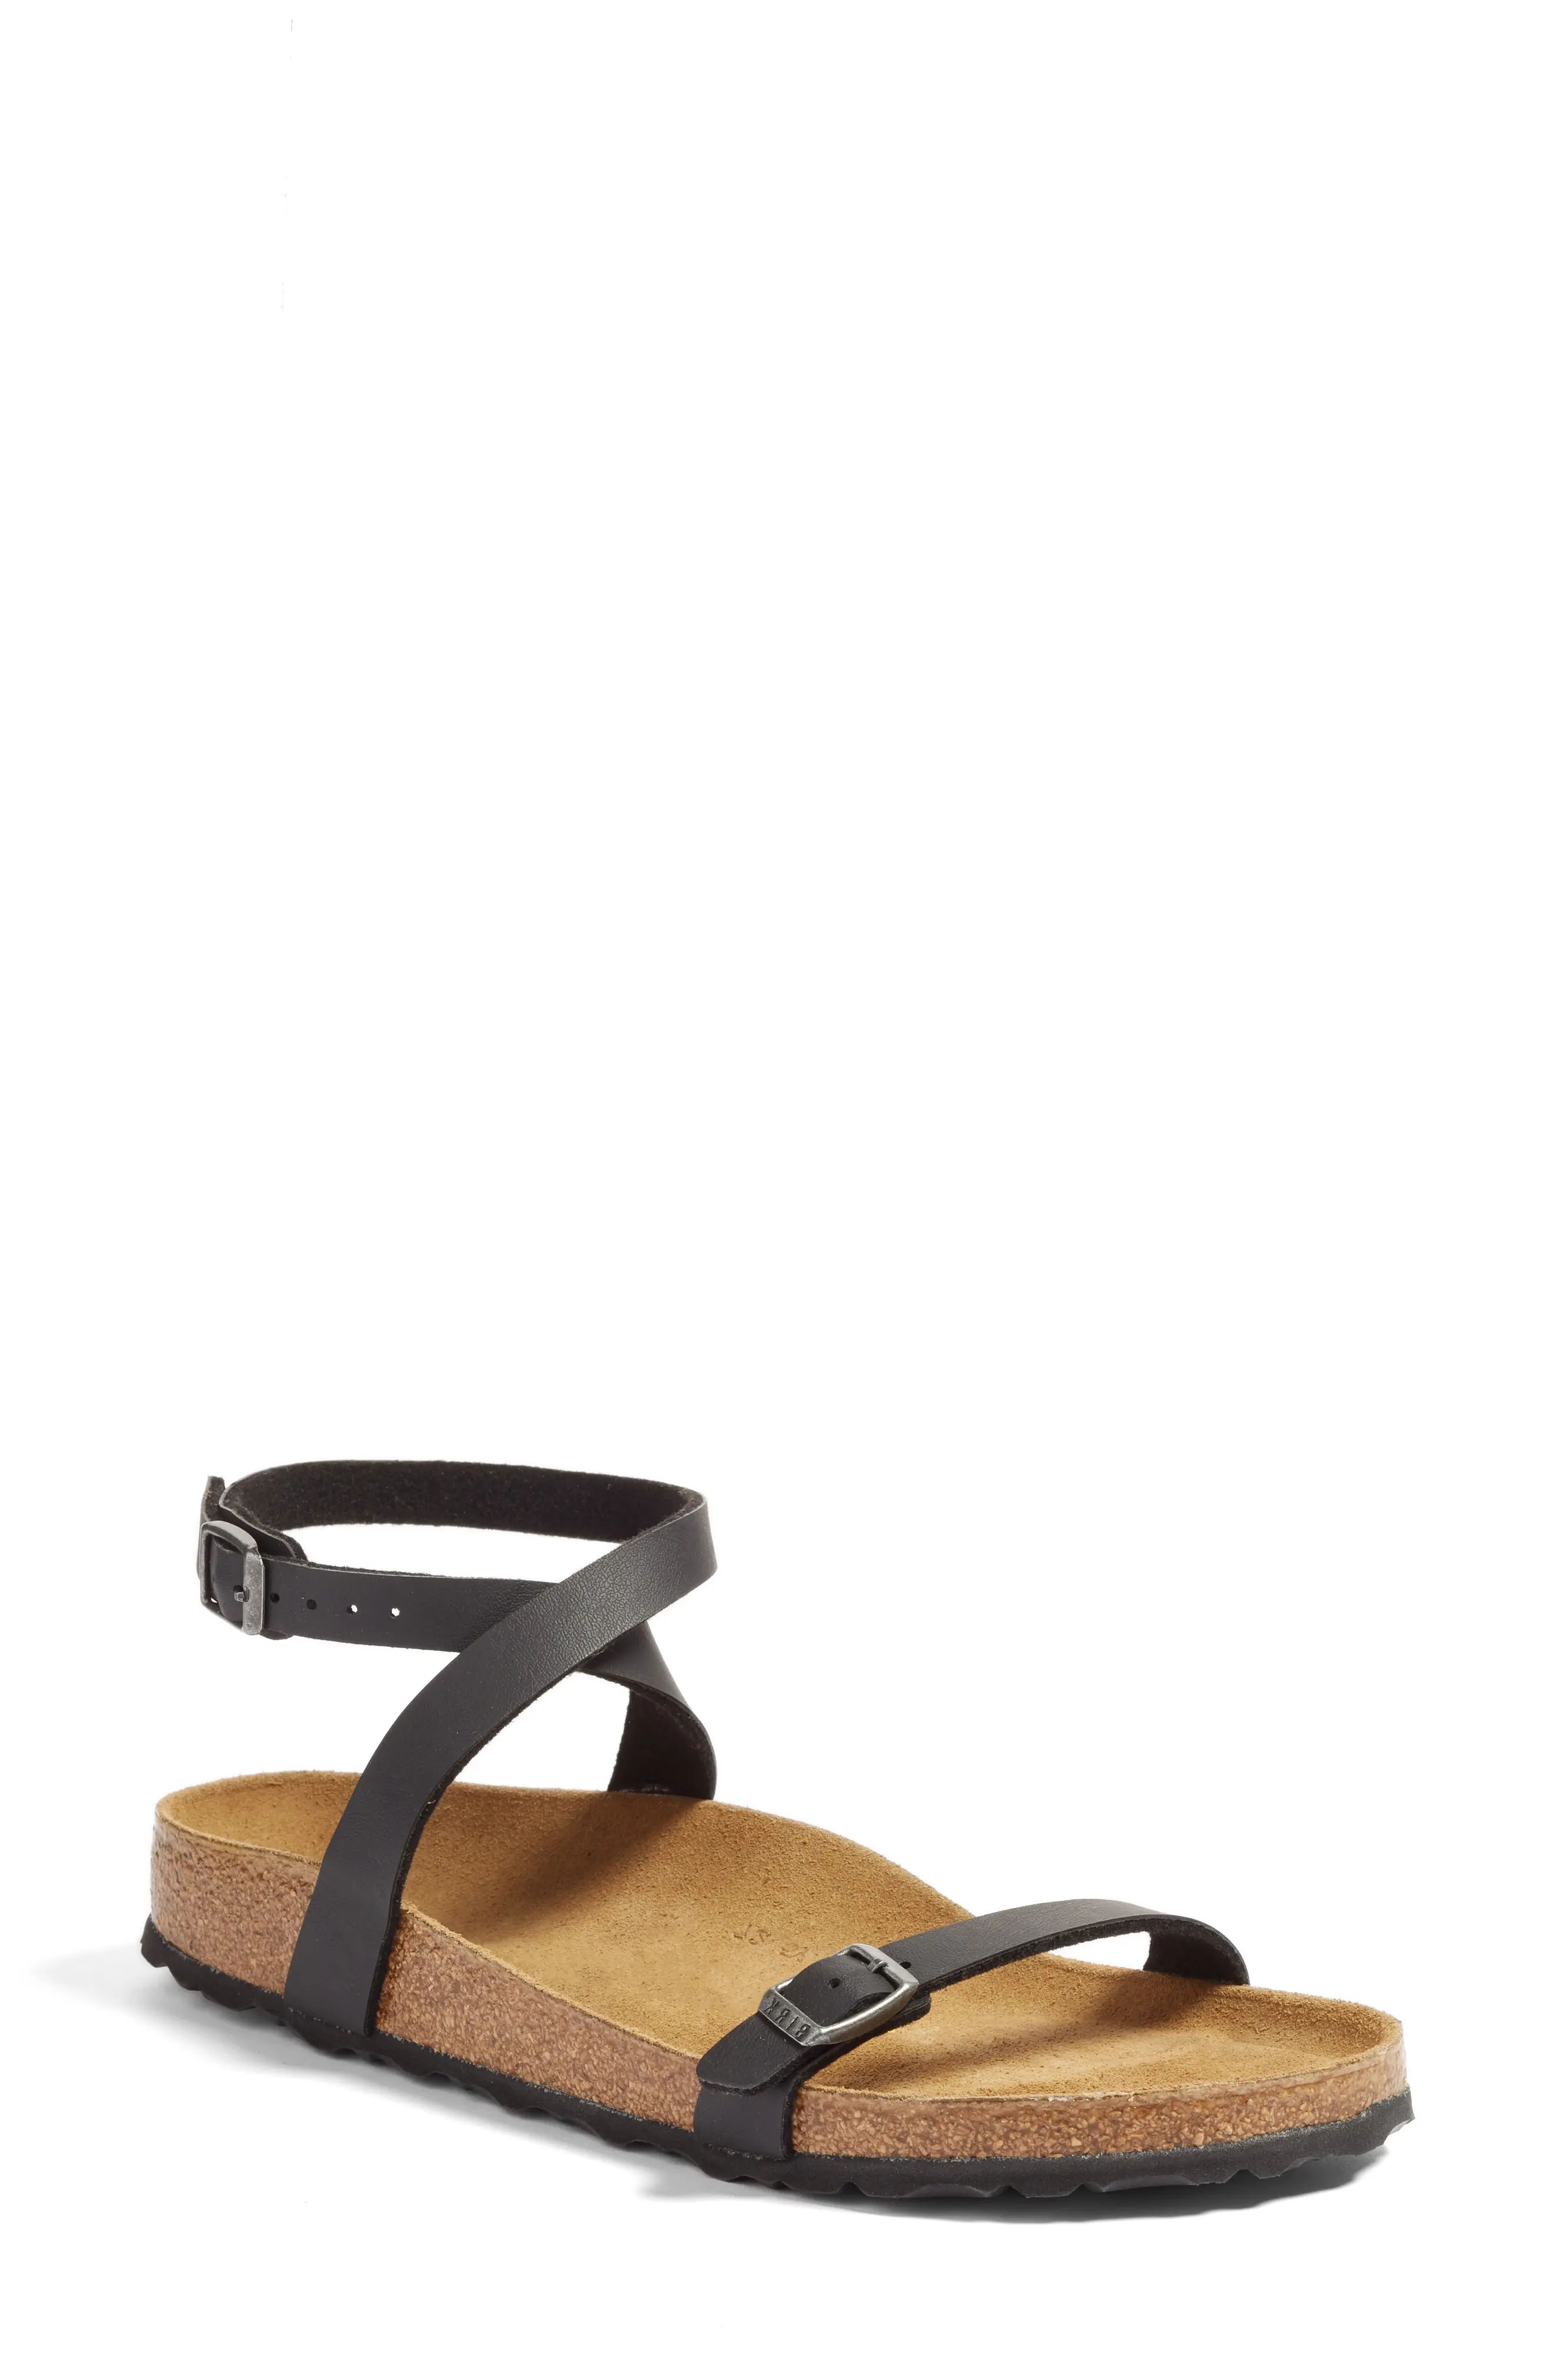 Birkenstock Daloa Ankle Strap Sandal in Black at Nordstrom, Size 10-10.5Us | Nordstrom